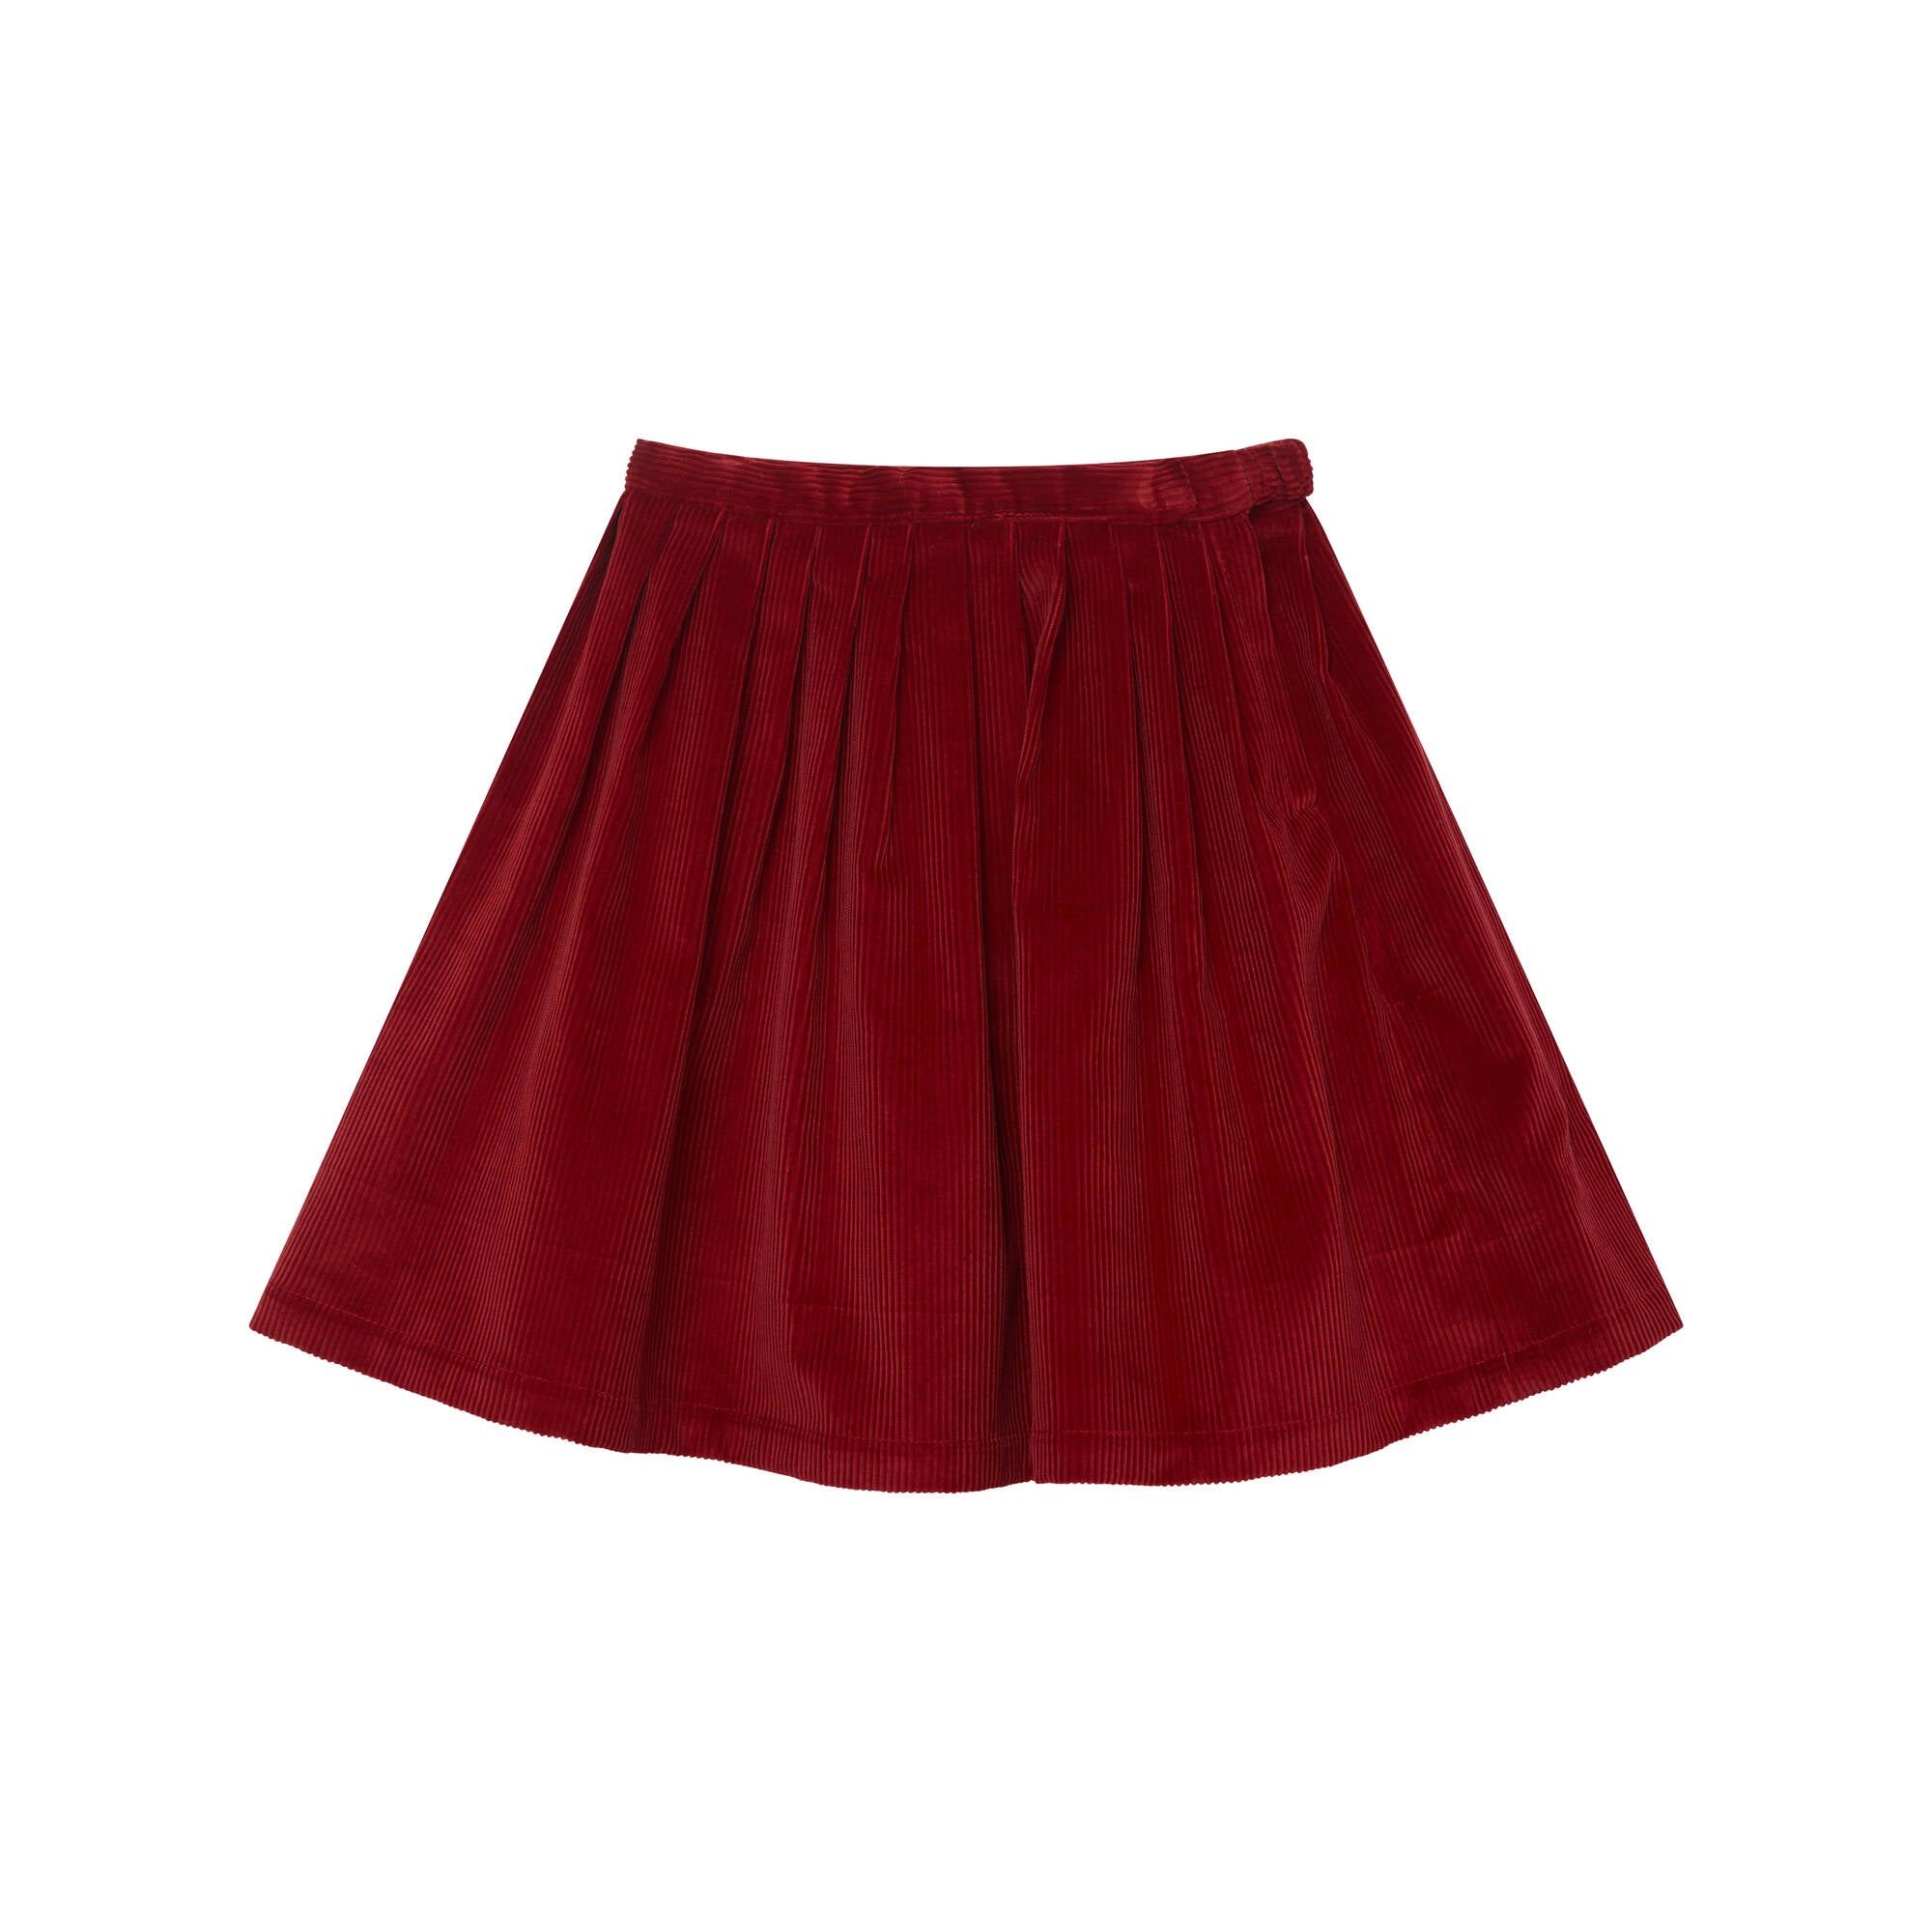 Girls Red Corduroy Skirt